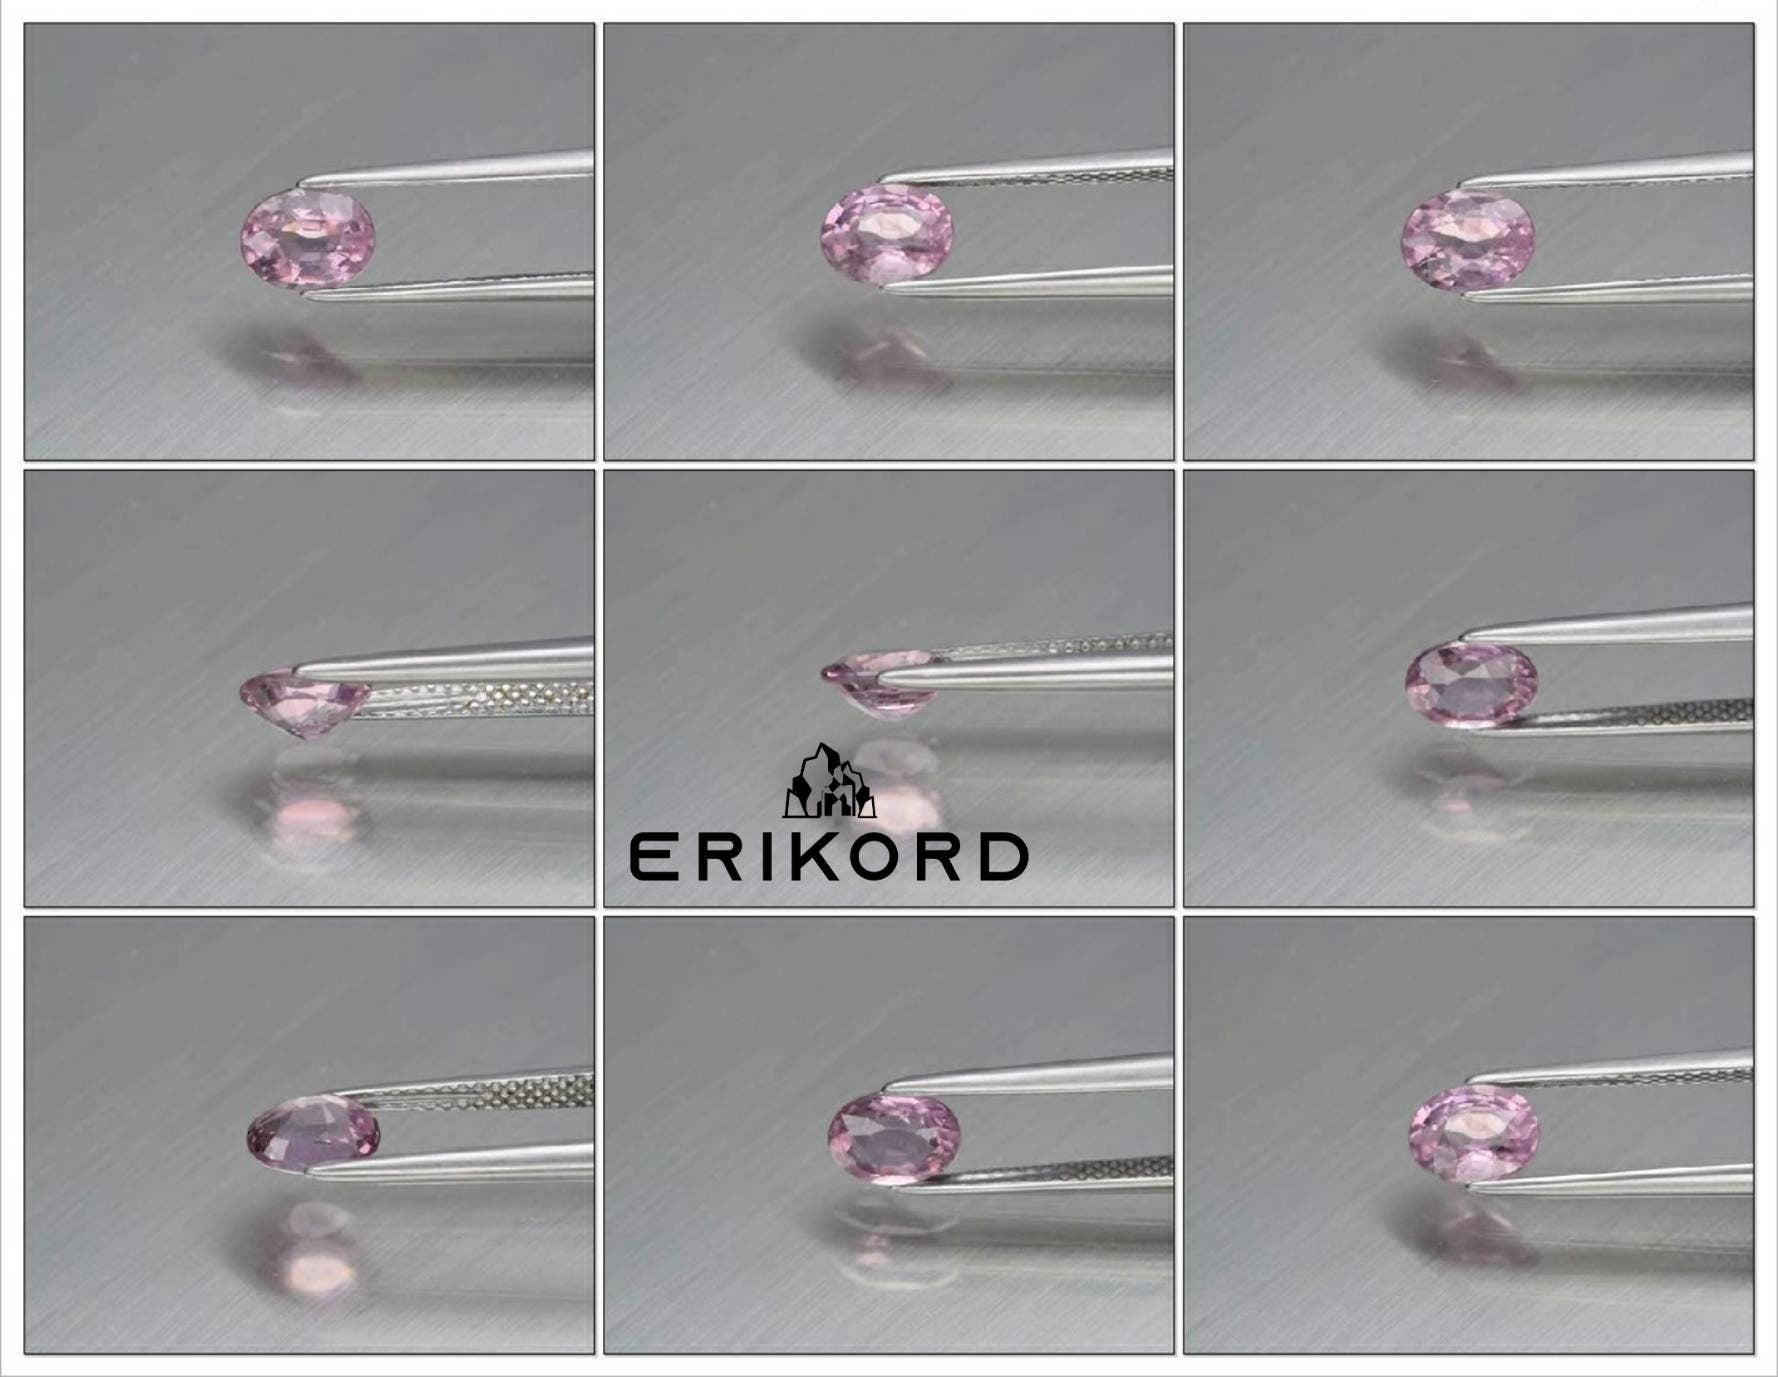 0.98ct Natural Spinel Gemstone Pink Spinel Mogok Heated Spinel Oval Faceted Loose Gemstones Oval Cut Spinel Gem Light Pink Gemstone